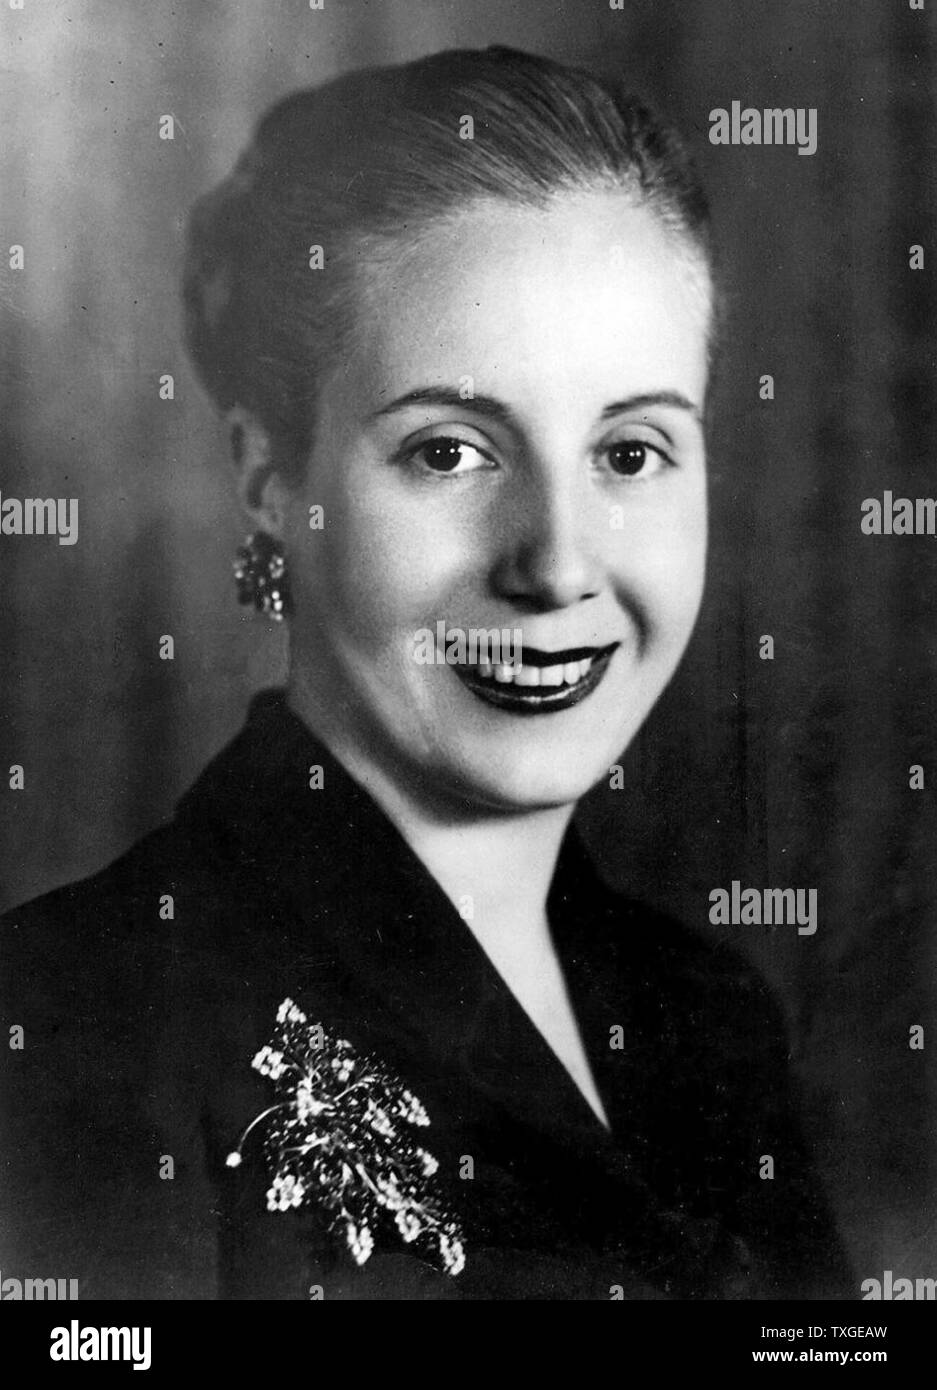 Ritratto fotografico di Eva Peron (1919-1952) seconda moglie del presidente argentino Juan Peron (1895-1974) e servita come la prima donna di Argentina. Datata 1945 Foto Stock